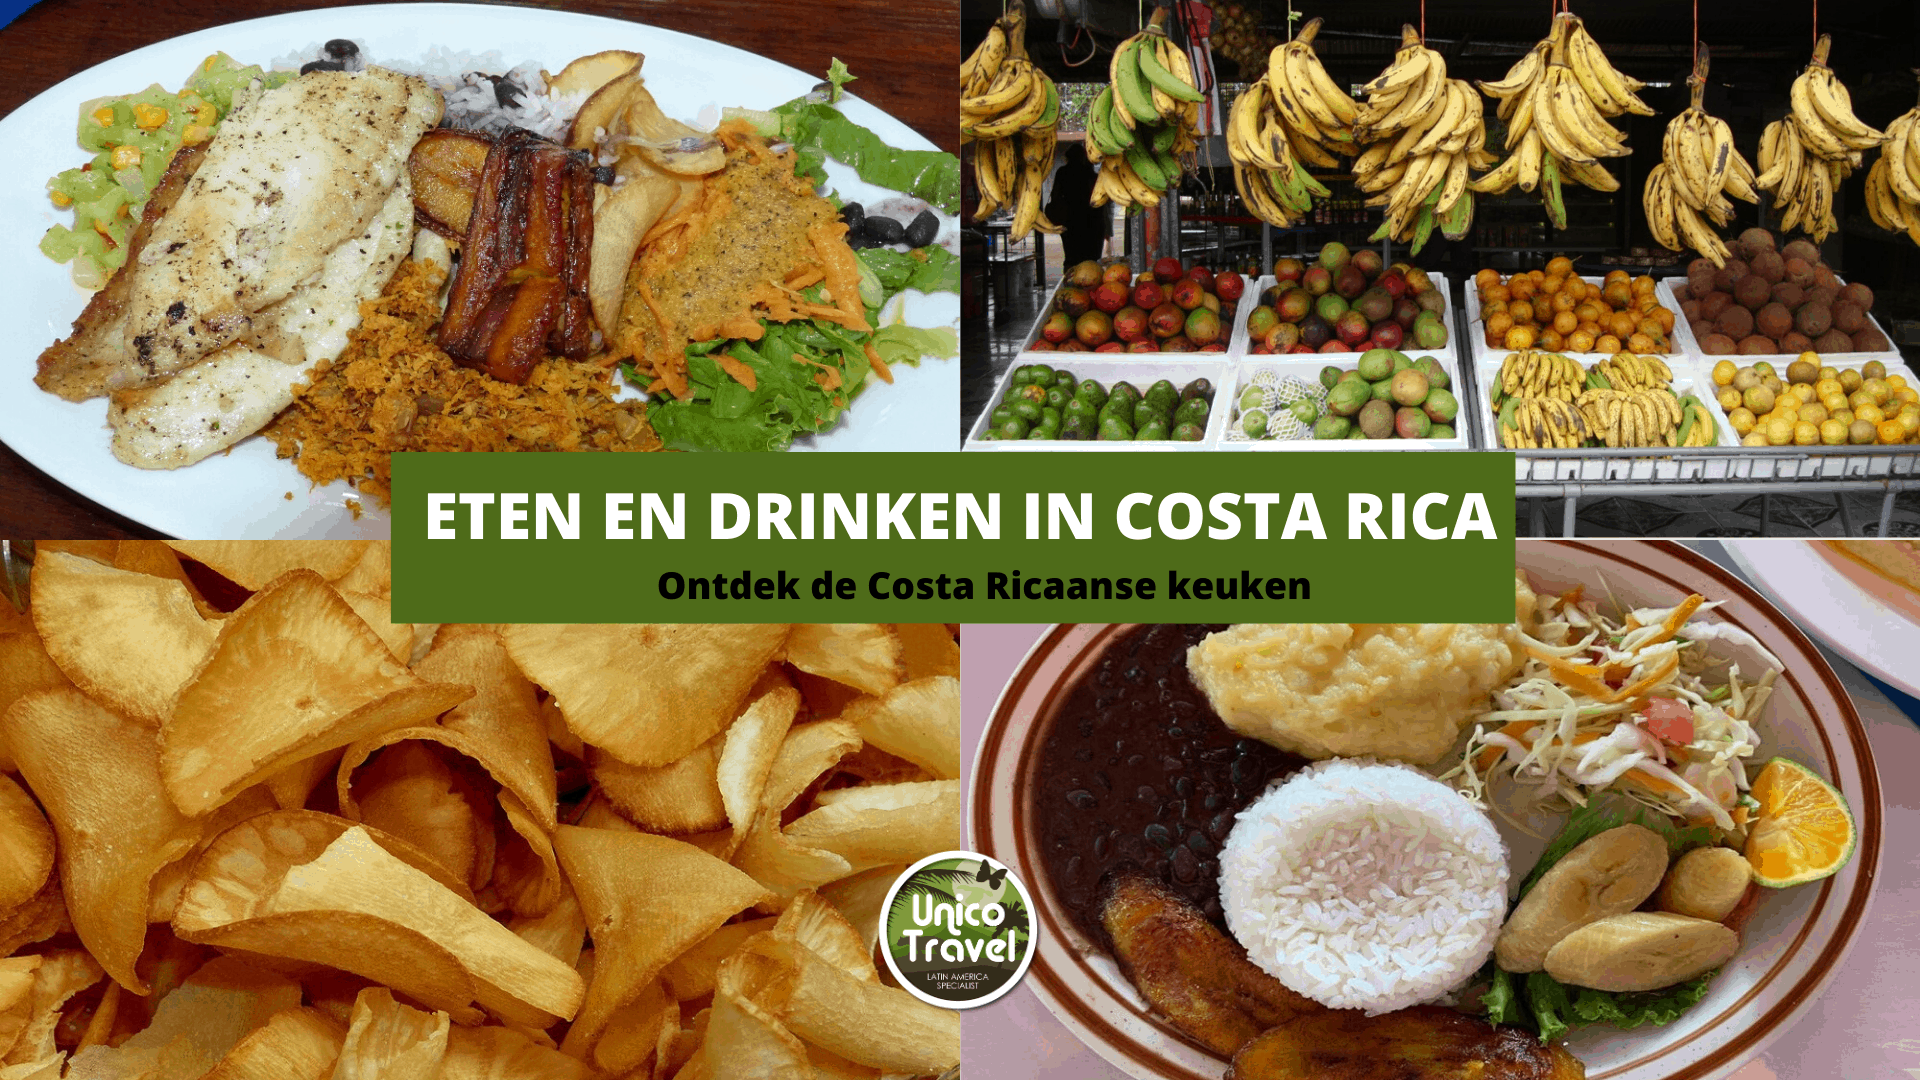 Luxe onze Kwaadaardige tumor Eten en drinken Costa Rica | Ontdek de Costa Ricaanse keuken!